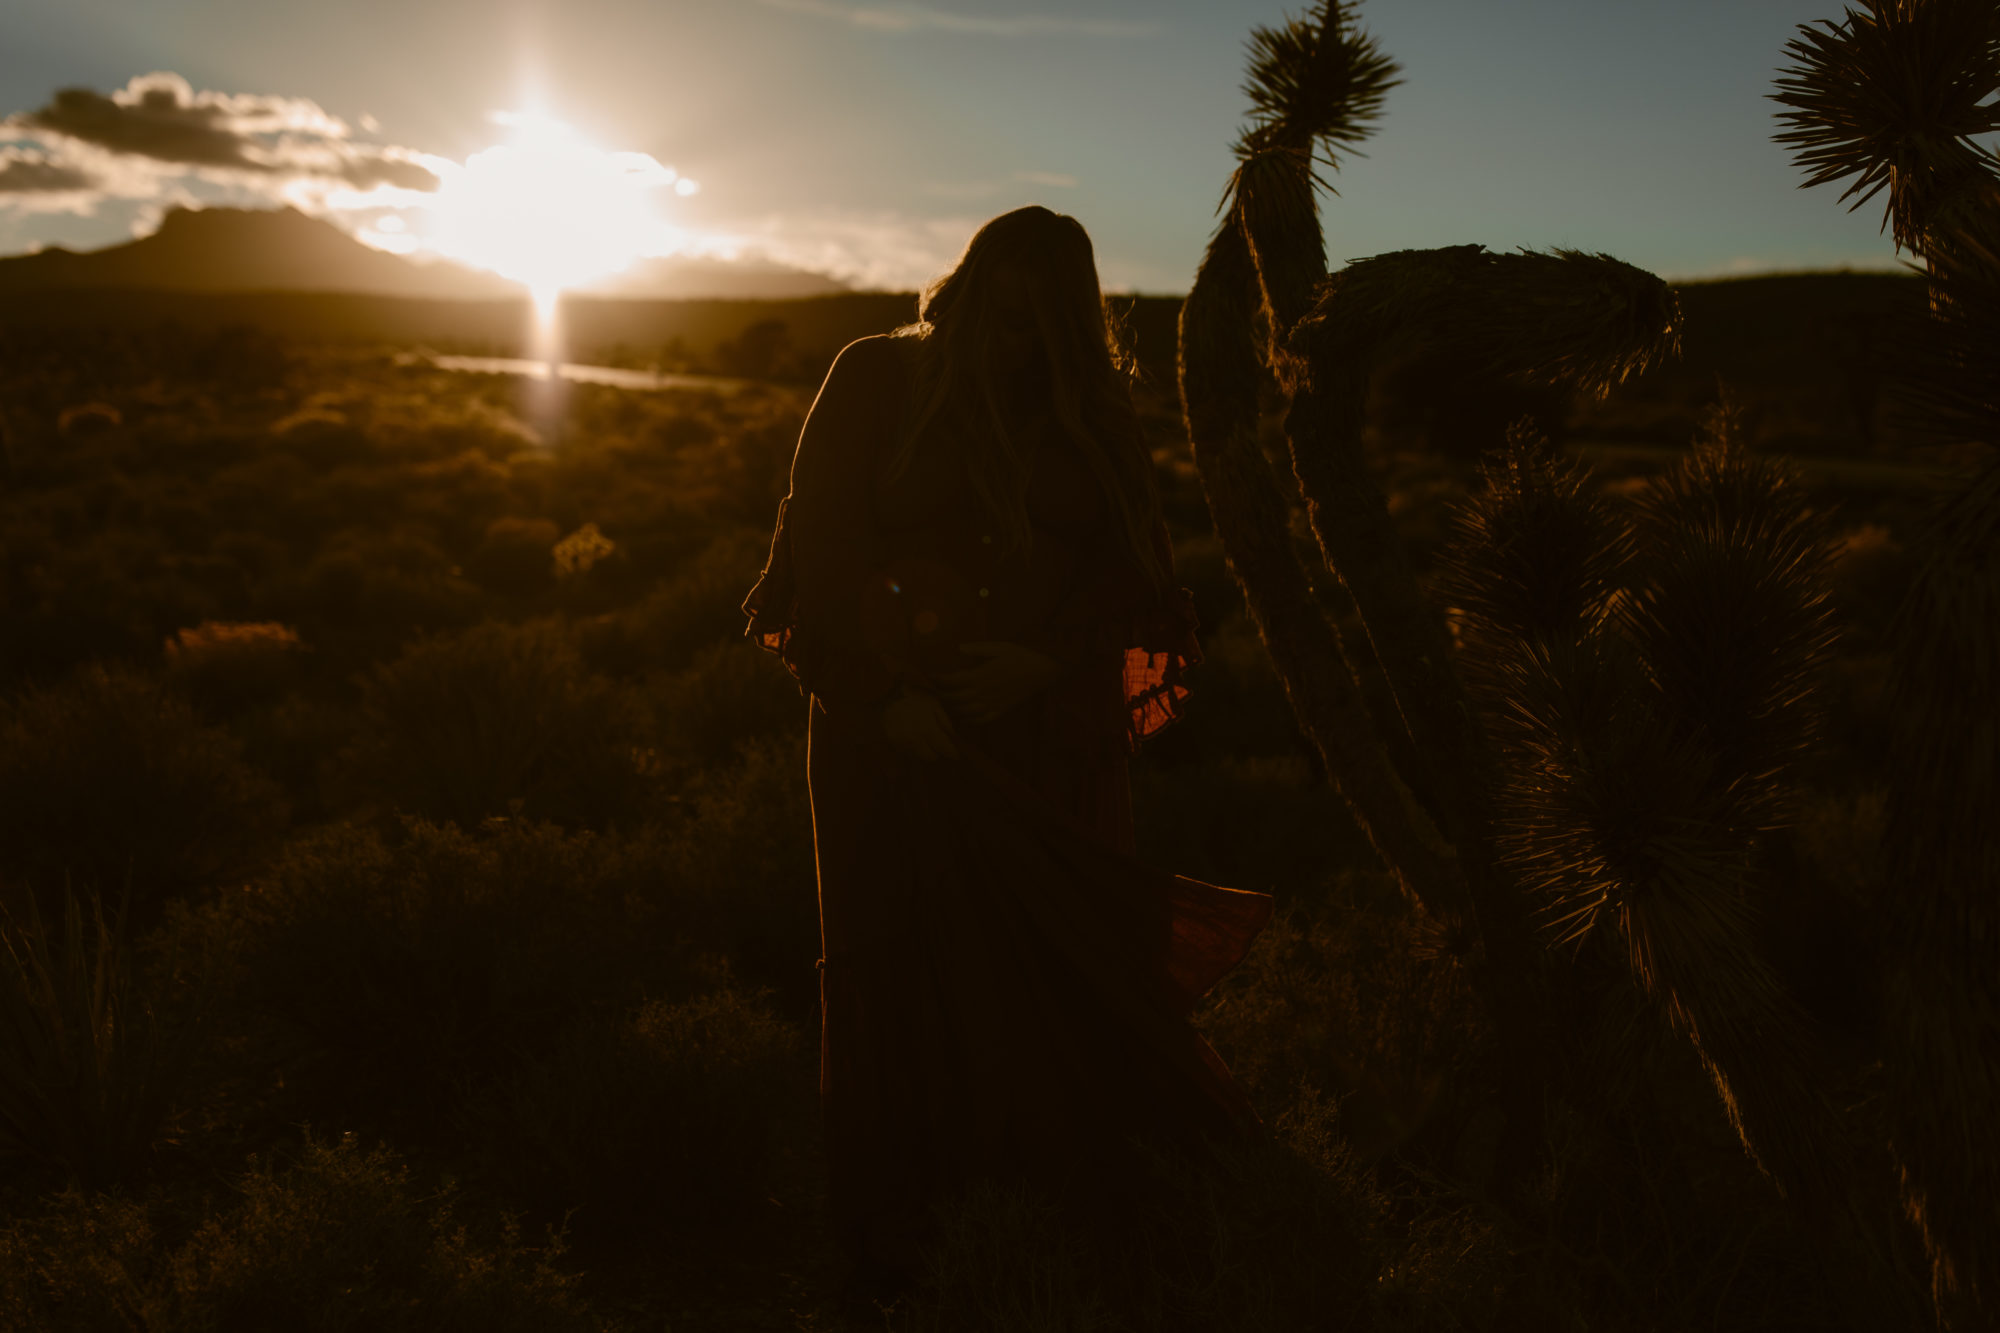 Woman posing during sunset desert photoshoot